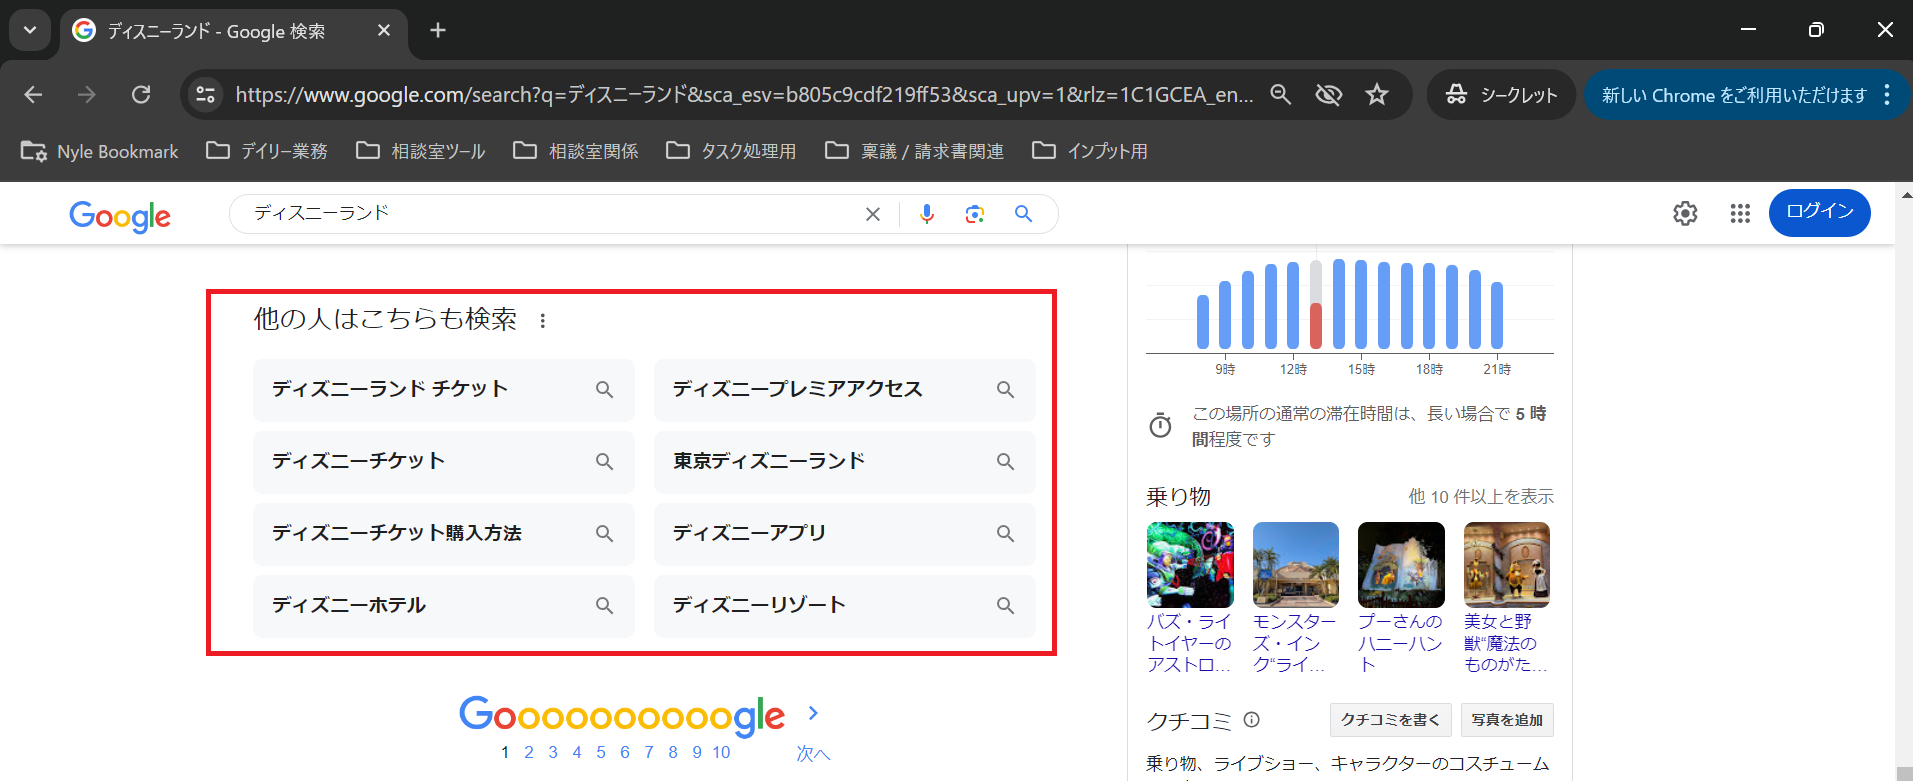 「東京ディズニーランド」と検索し、自然検索TOPに公式サイト、下に「他の人はこちらも検索」、右横に東京ディズニーランドのナレッジグラフが表示されているGoogle検索結果画面キャプチャ